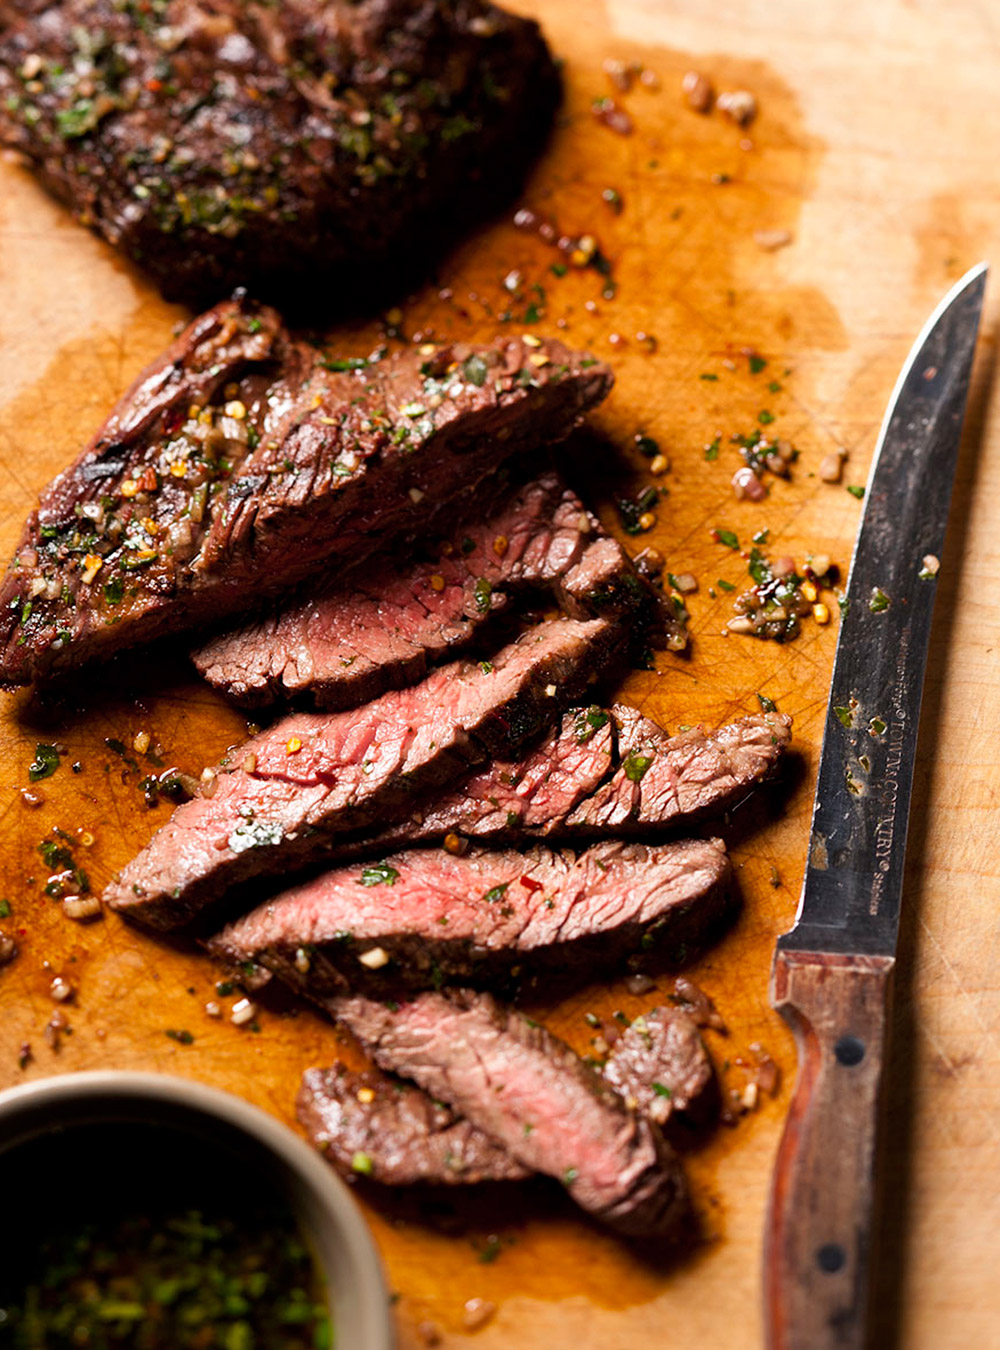 Recette de boeuf: tout sur les rôtis ou les steaks de boeuf  page 6 ...